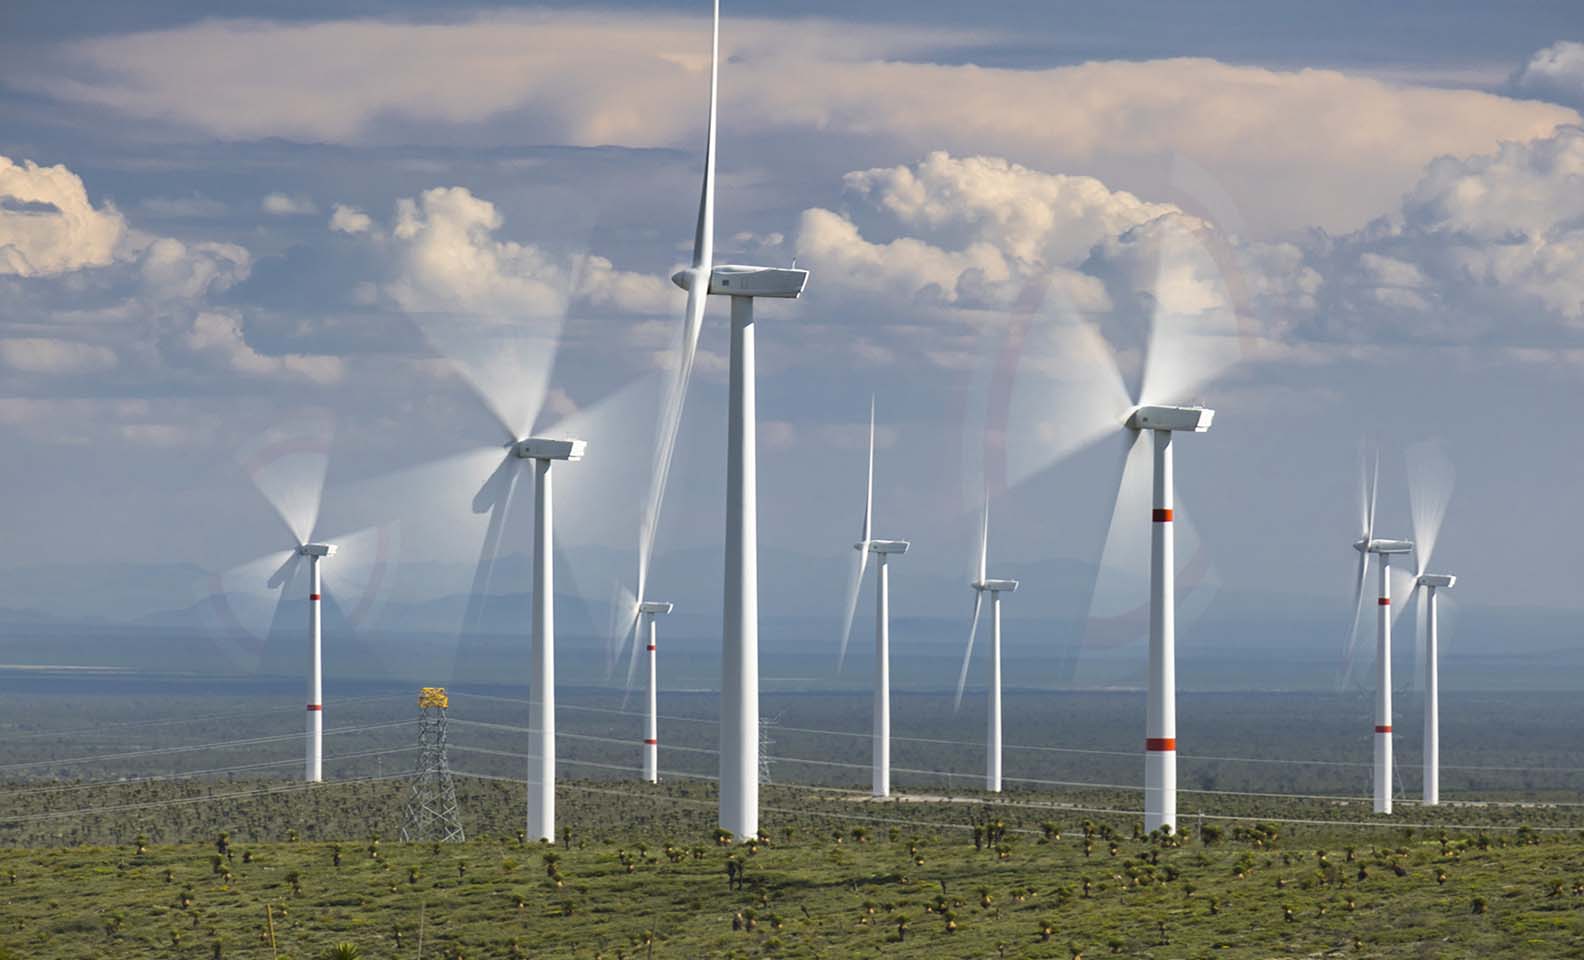 Visión general de las turbinas eólicas en funcionamiento